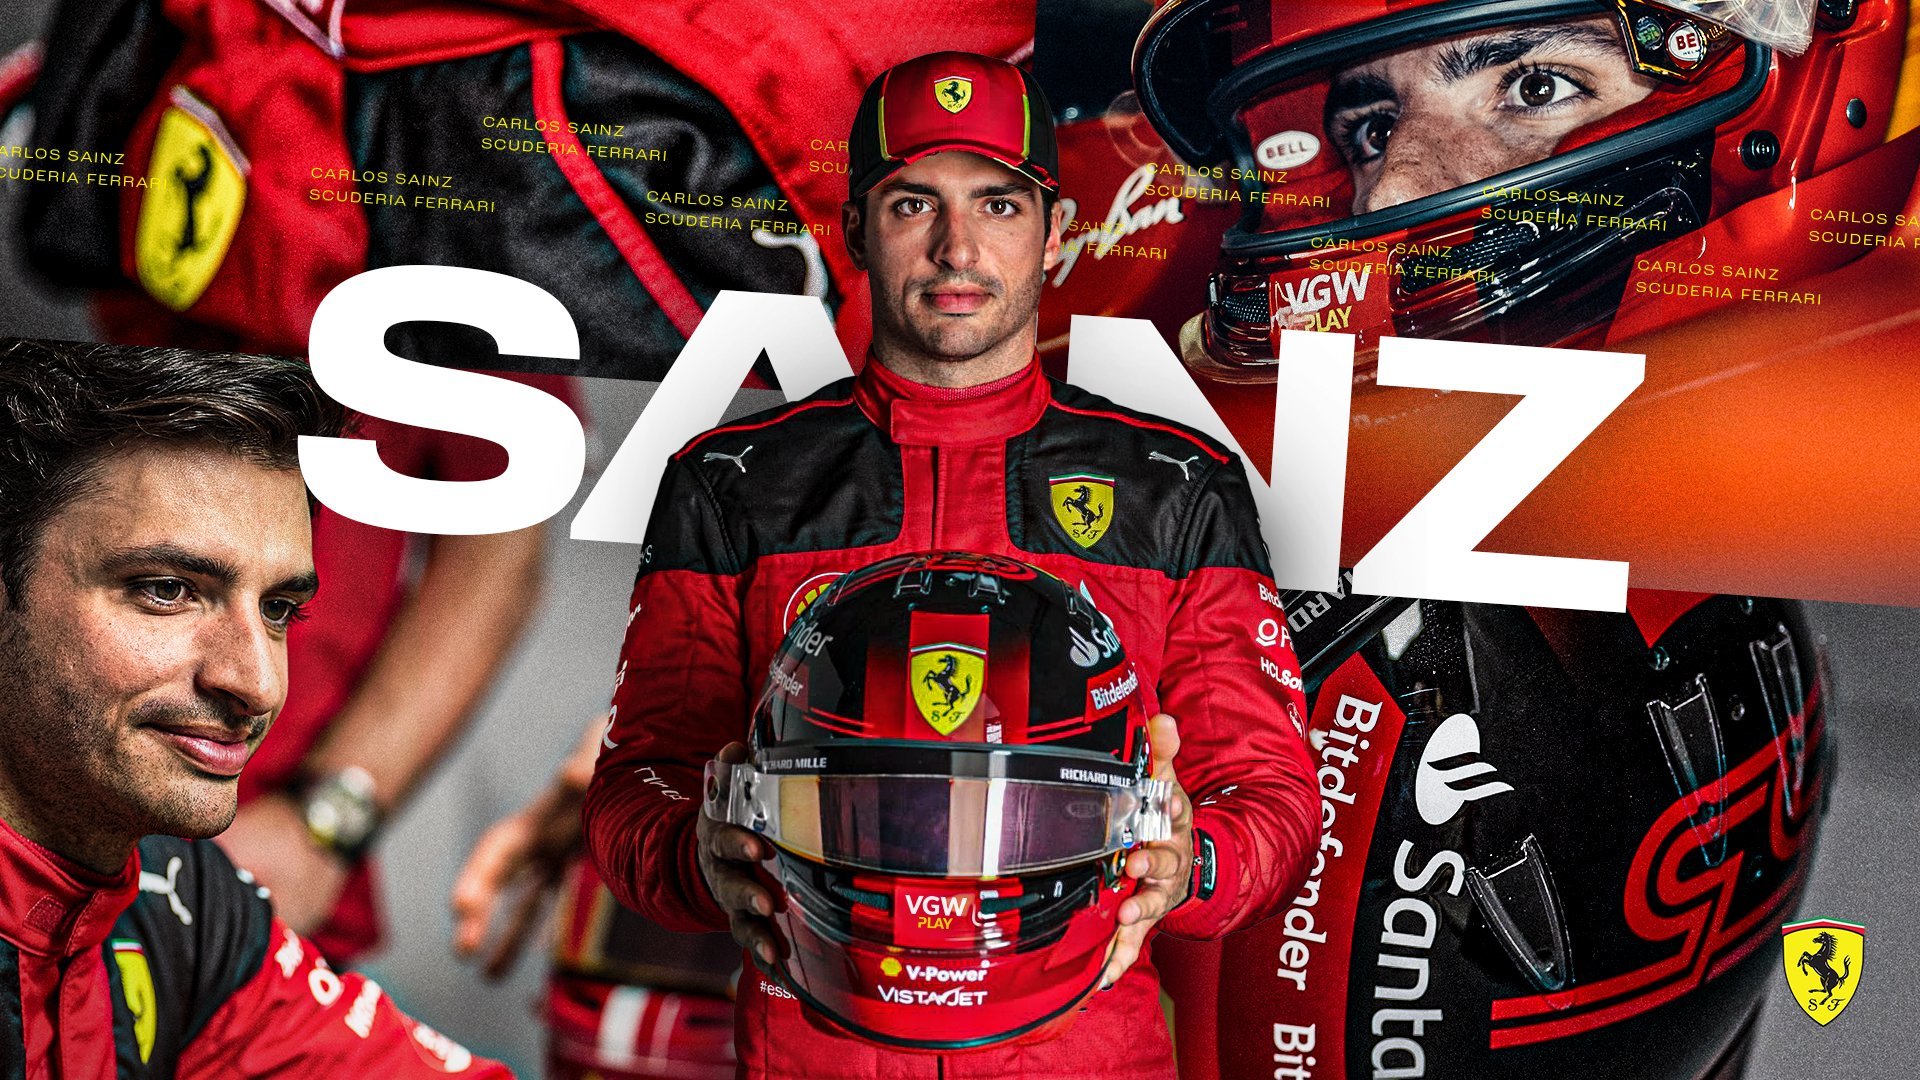 Carlos Sainz, en la imagen promocional del Gran Premio de Azerbaiyn elaborada por Ferrari